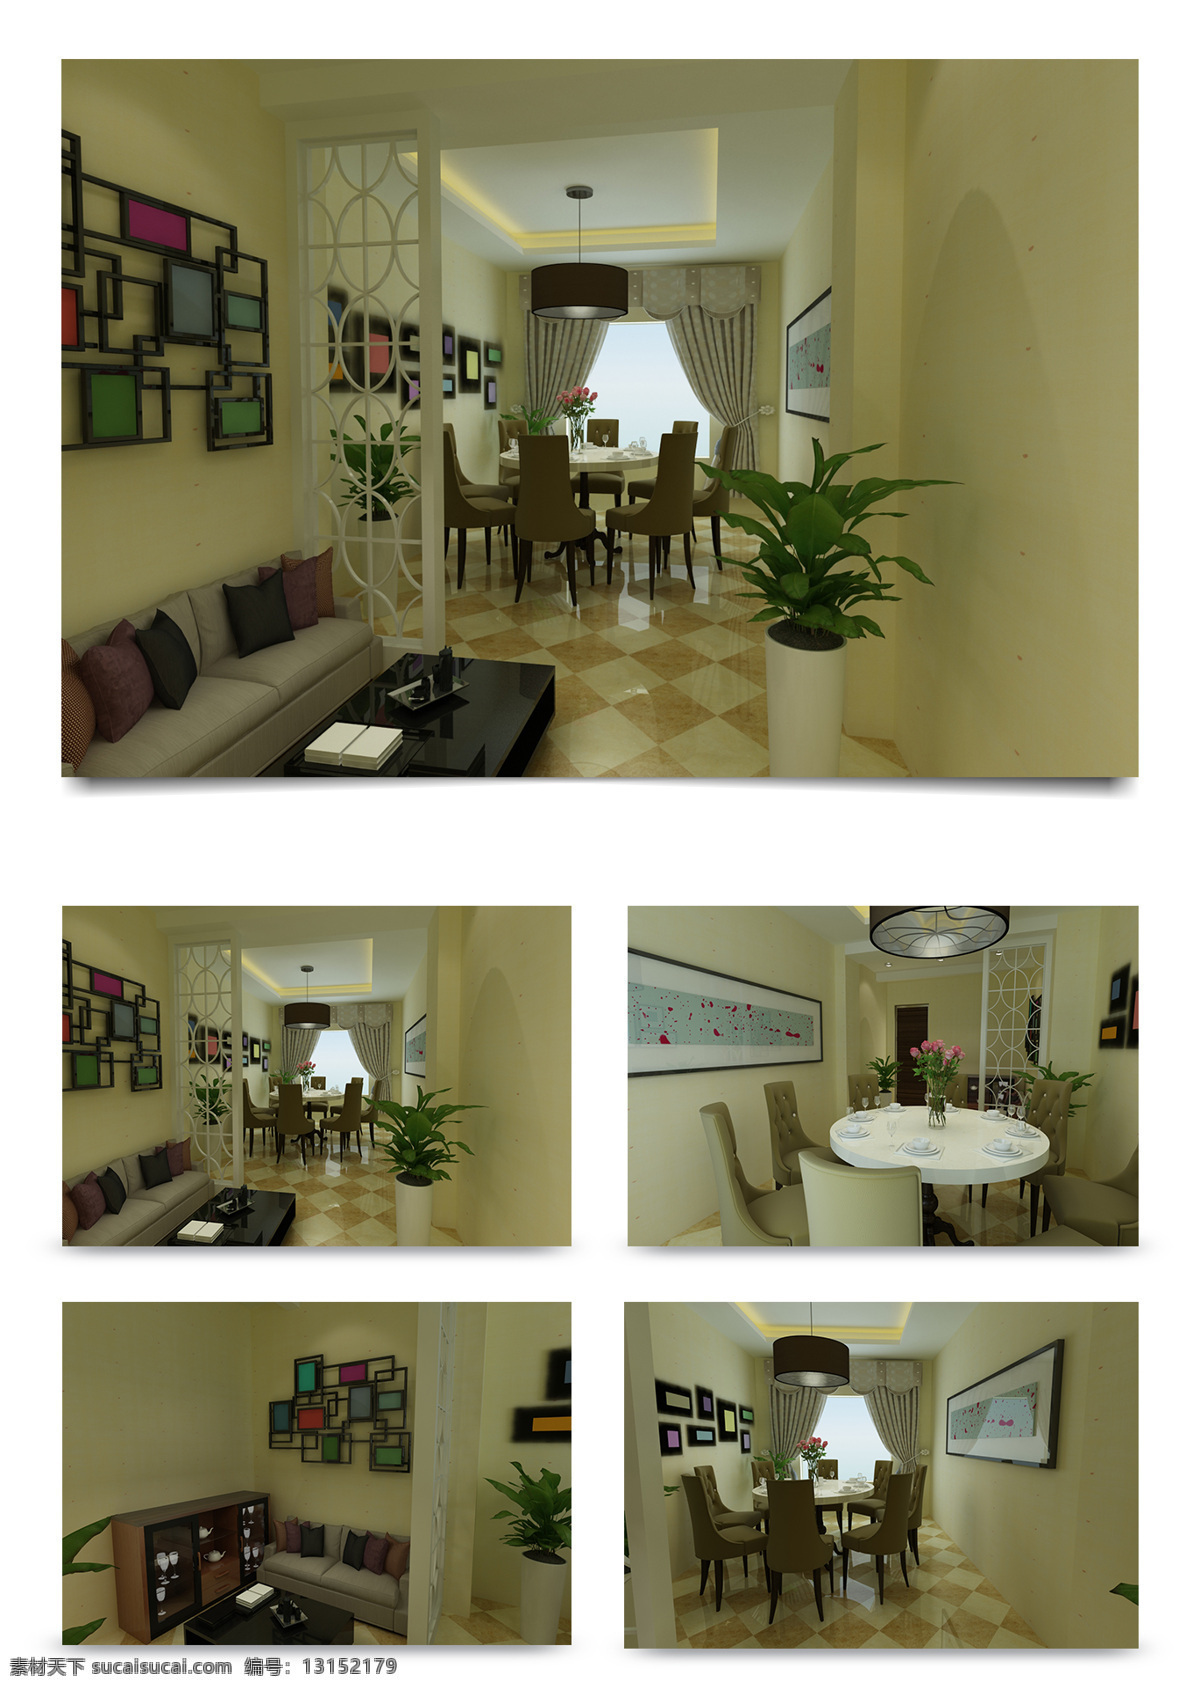 小 餐厅 室内 效果图 小餐厅 简约风格 室内效果图 3d室内设计 餐厅效果图